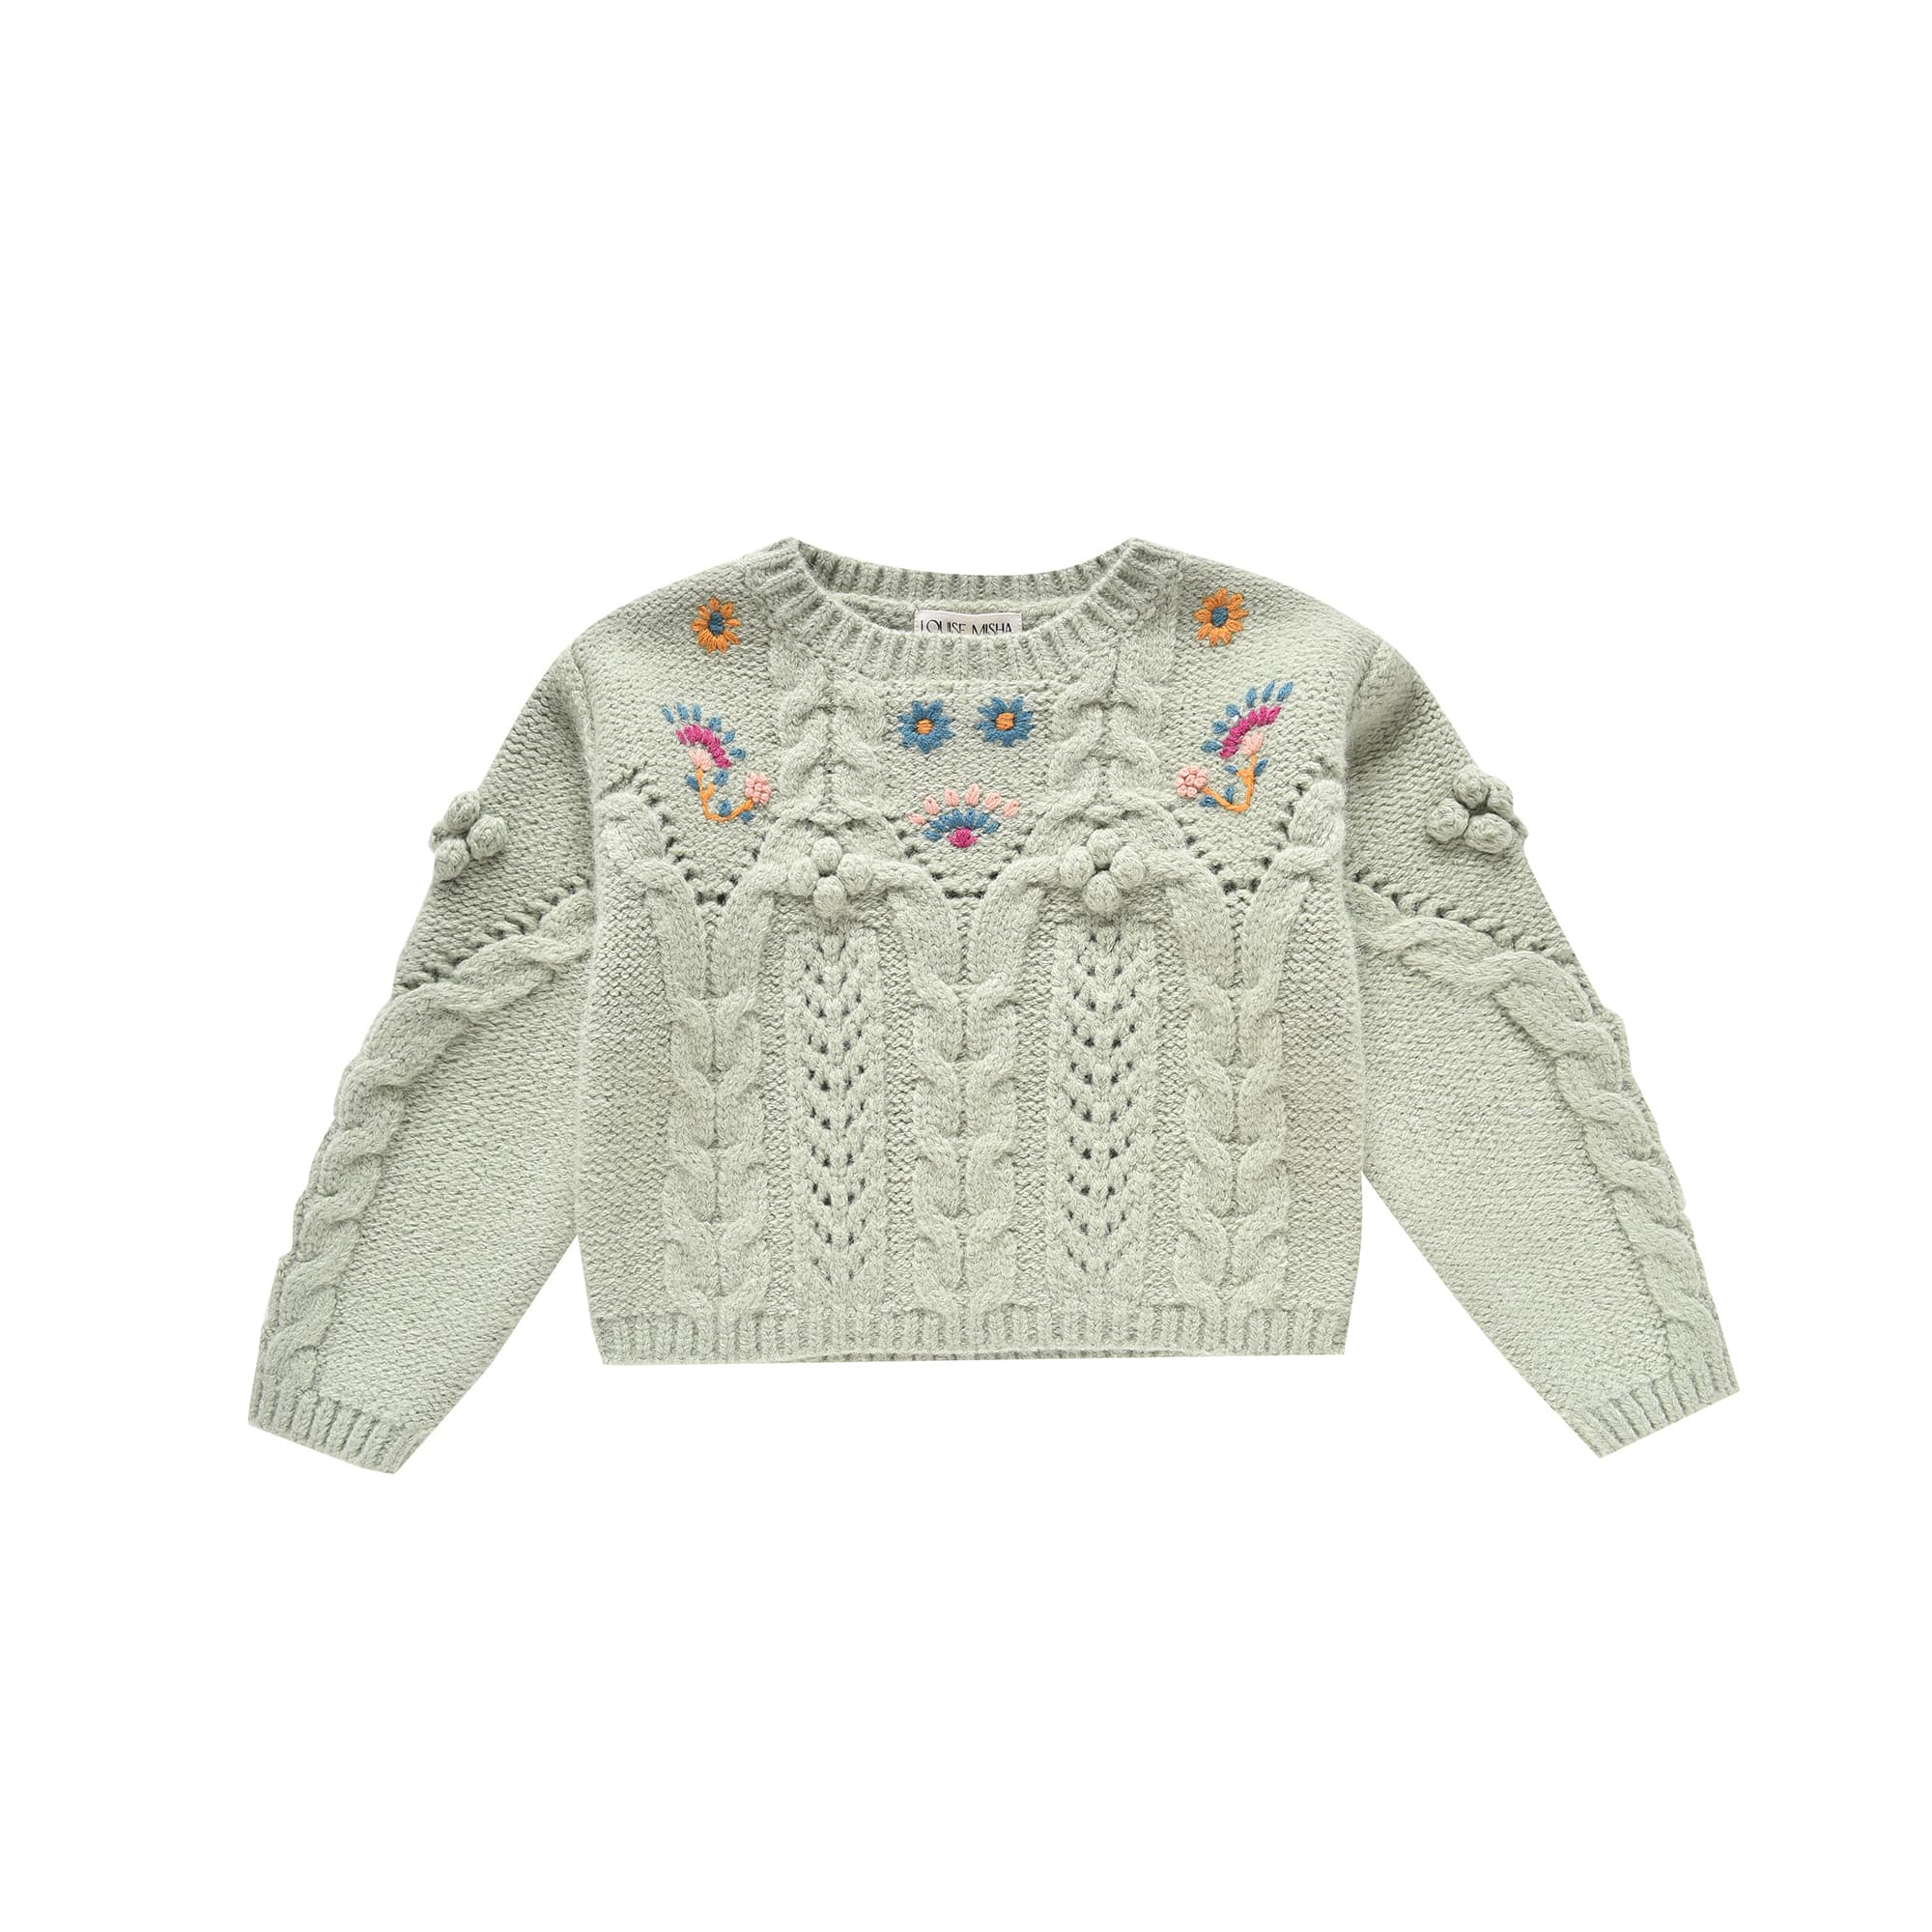 Girls Light Green Knit Sweater